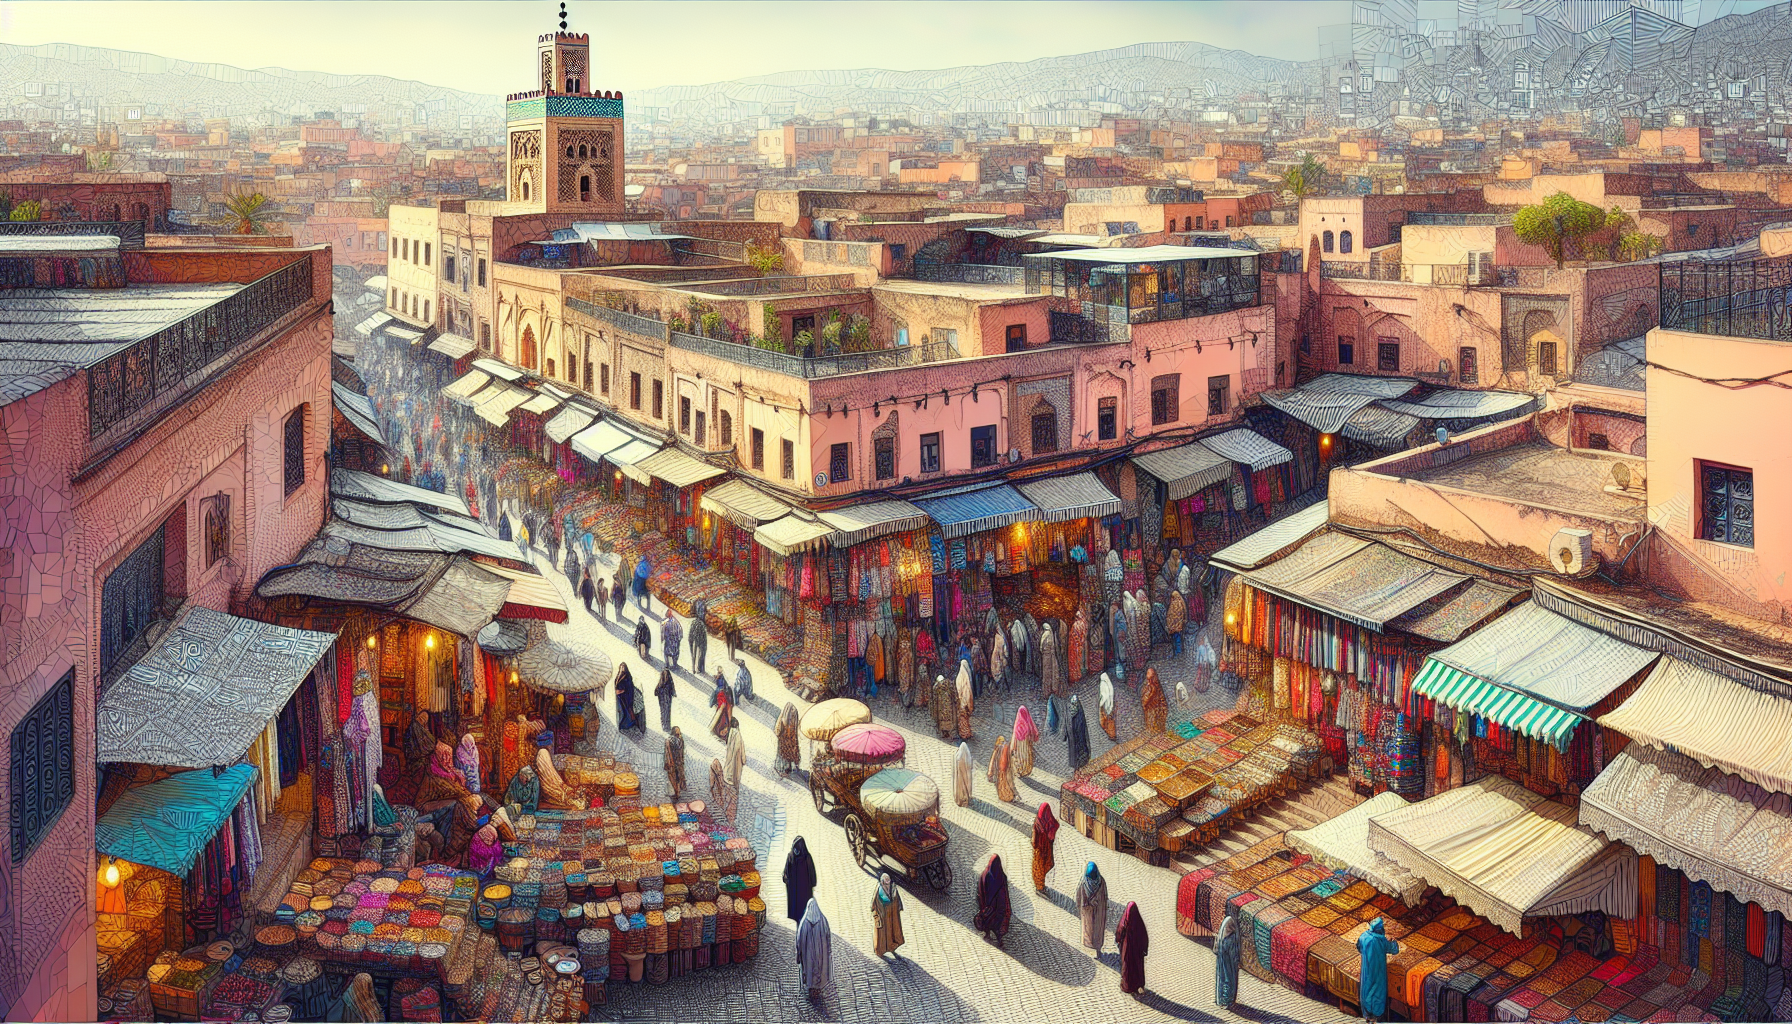 découvrez marrakech, la perle du tourisme marocain, avec sa médina animée, ses magnifiques jardins et son ambiance envoûtante. plongez-vous dans l'histoire, la culture et la cuisine de cette ville fascinante lors de votre prochain voyage au maroc.